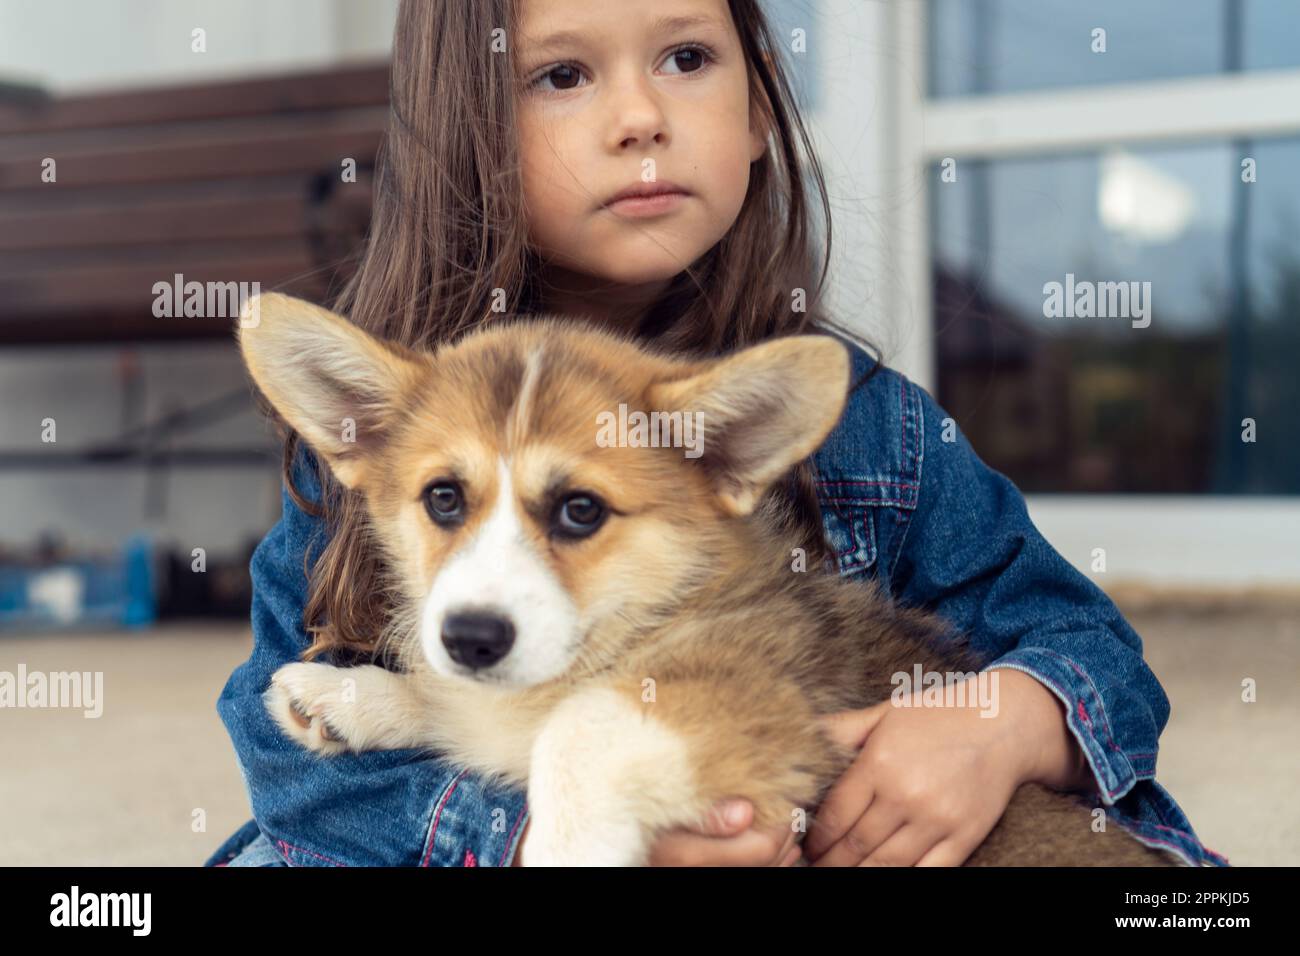 Porträt eines fantastischen kleinen Mädchens mit langen Haaren, das eine Jeansjacke trägt und das süße welsh pembroke Corgi Hundetier umarmt. Stockfoto